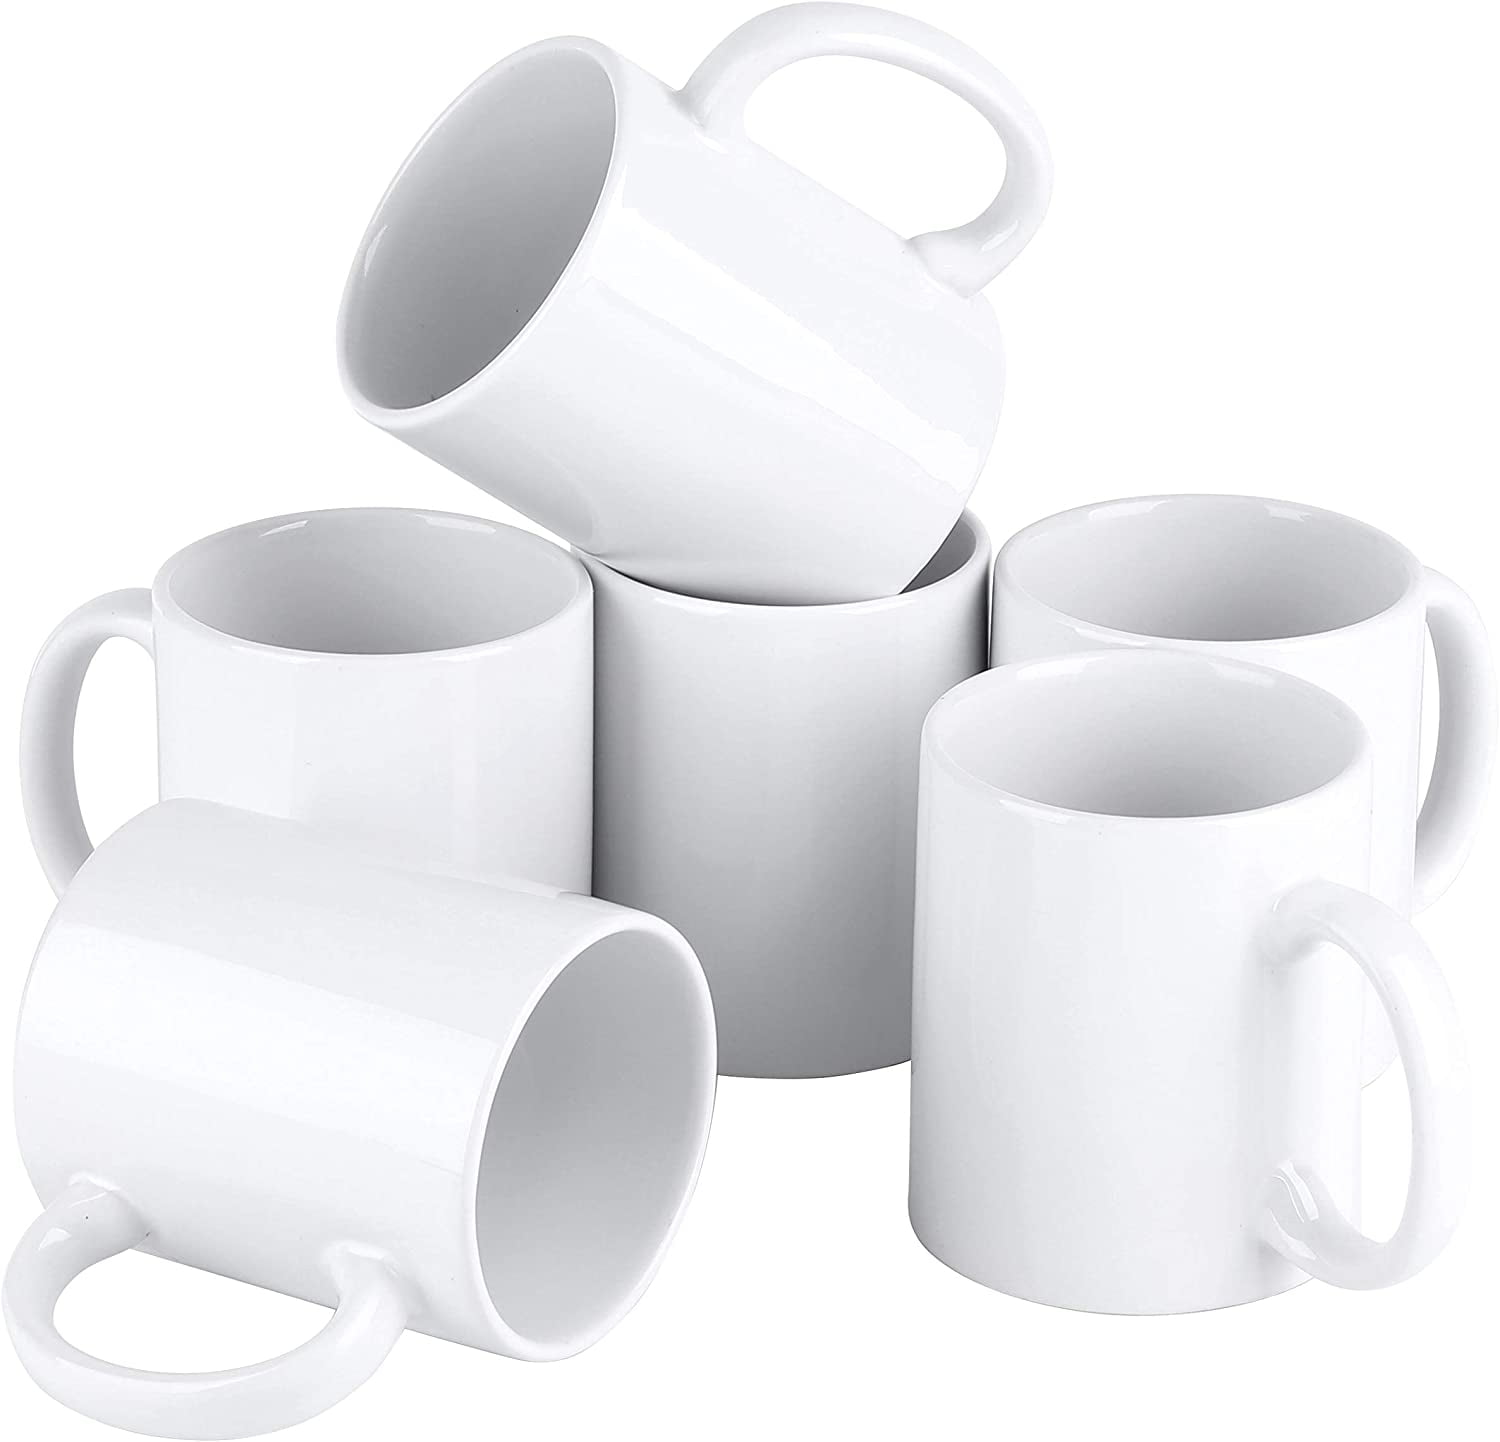 Cutiset 11 Ounce Ceramic Plain White Mugs,White Ceramic Mug,Sublimation  Mugs, Bulk Mugs,Set of 6